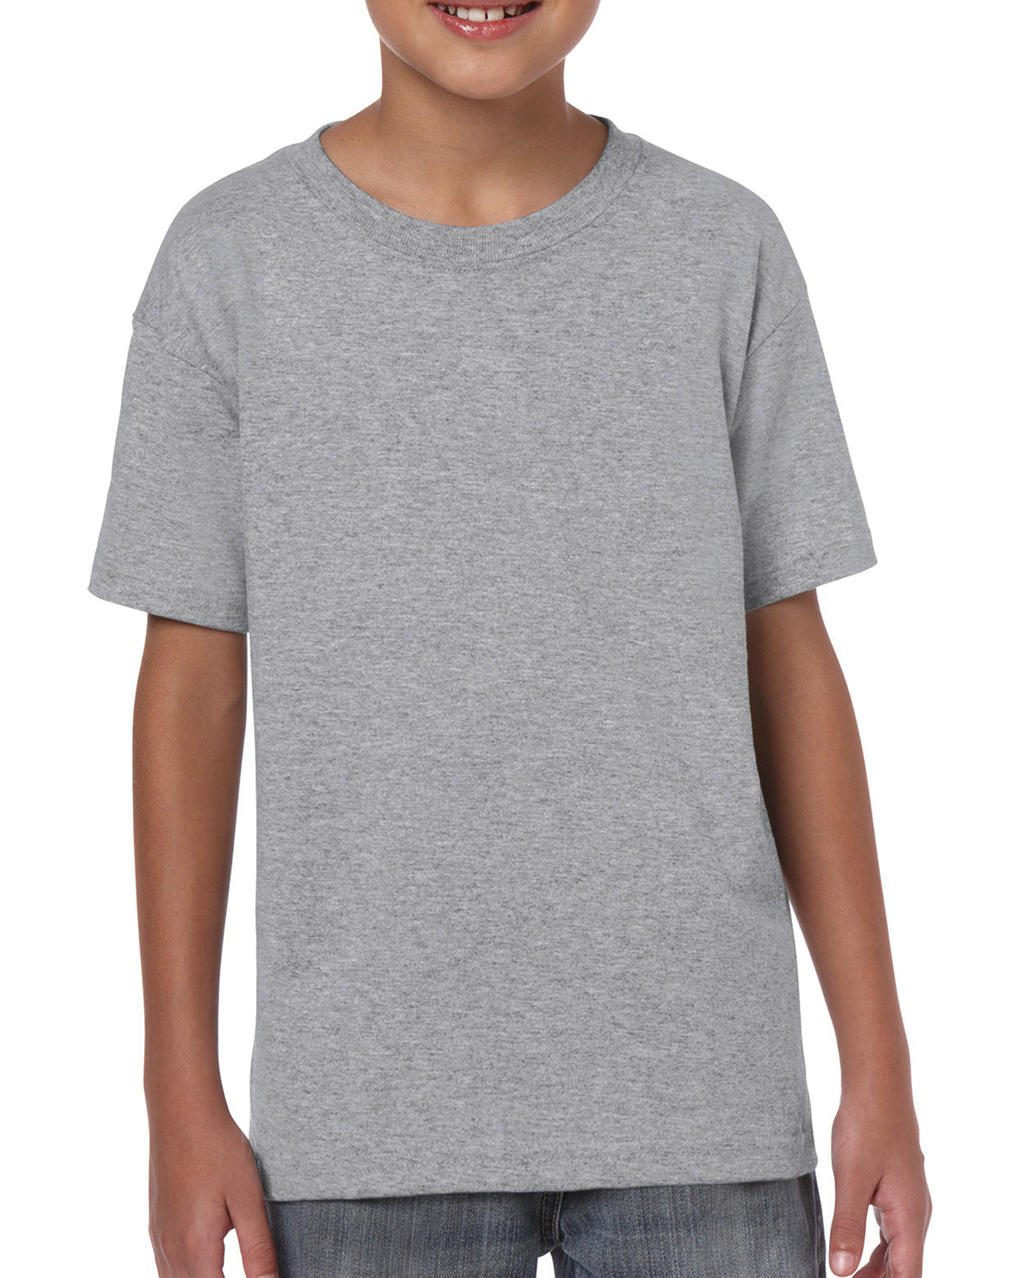 Detské tričko Heavy Cotton Youth - sport grey